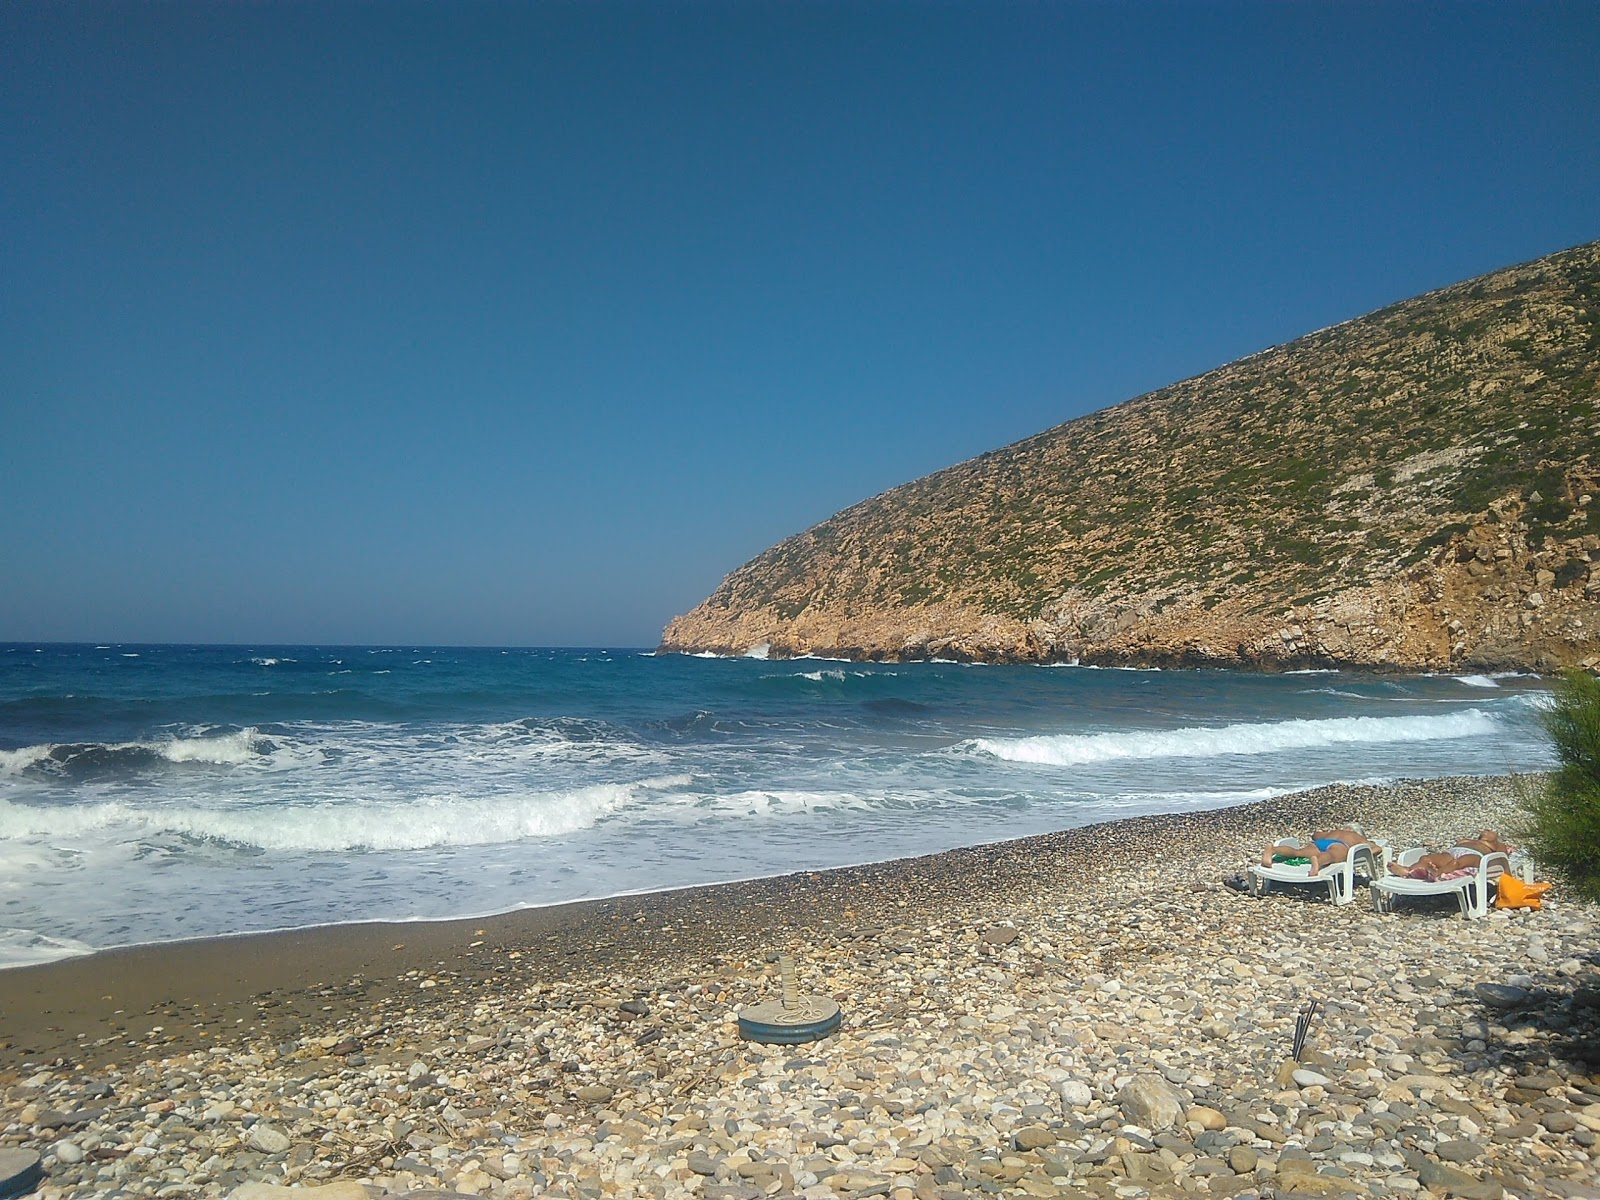 Fotografie cu Apollonas beach - locul popular printre cunoscătorii de relaxare